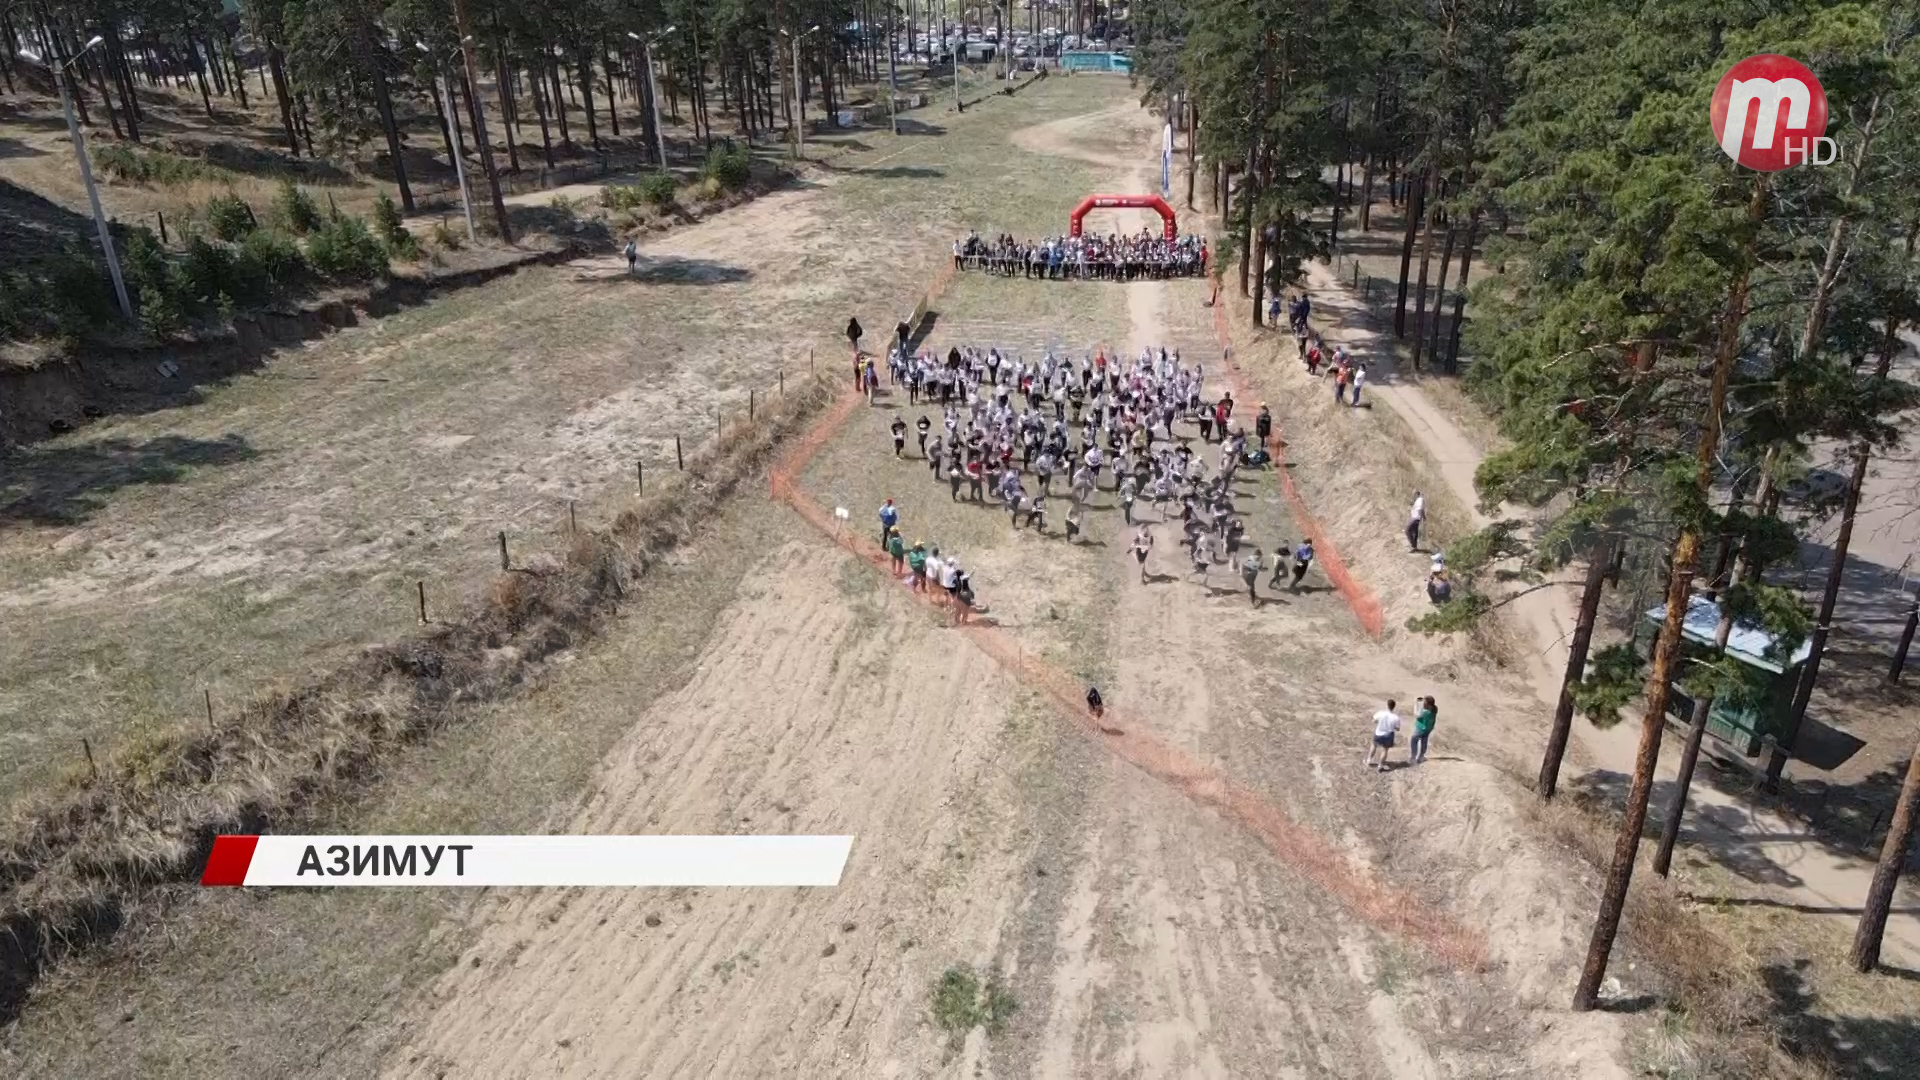 К спортивным соревнованиям «Российский Азимут» в Улан-Удэ присоединились 600 человек